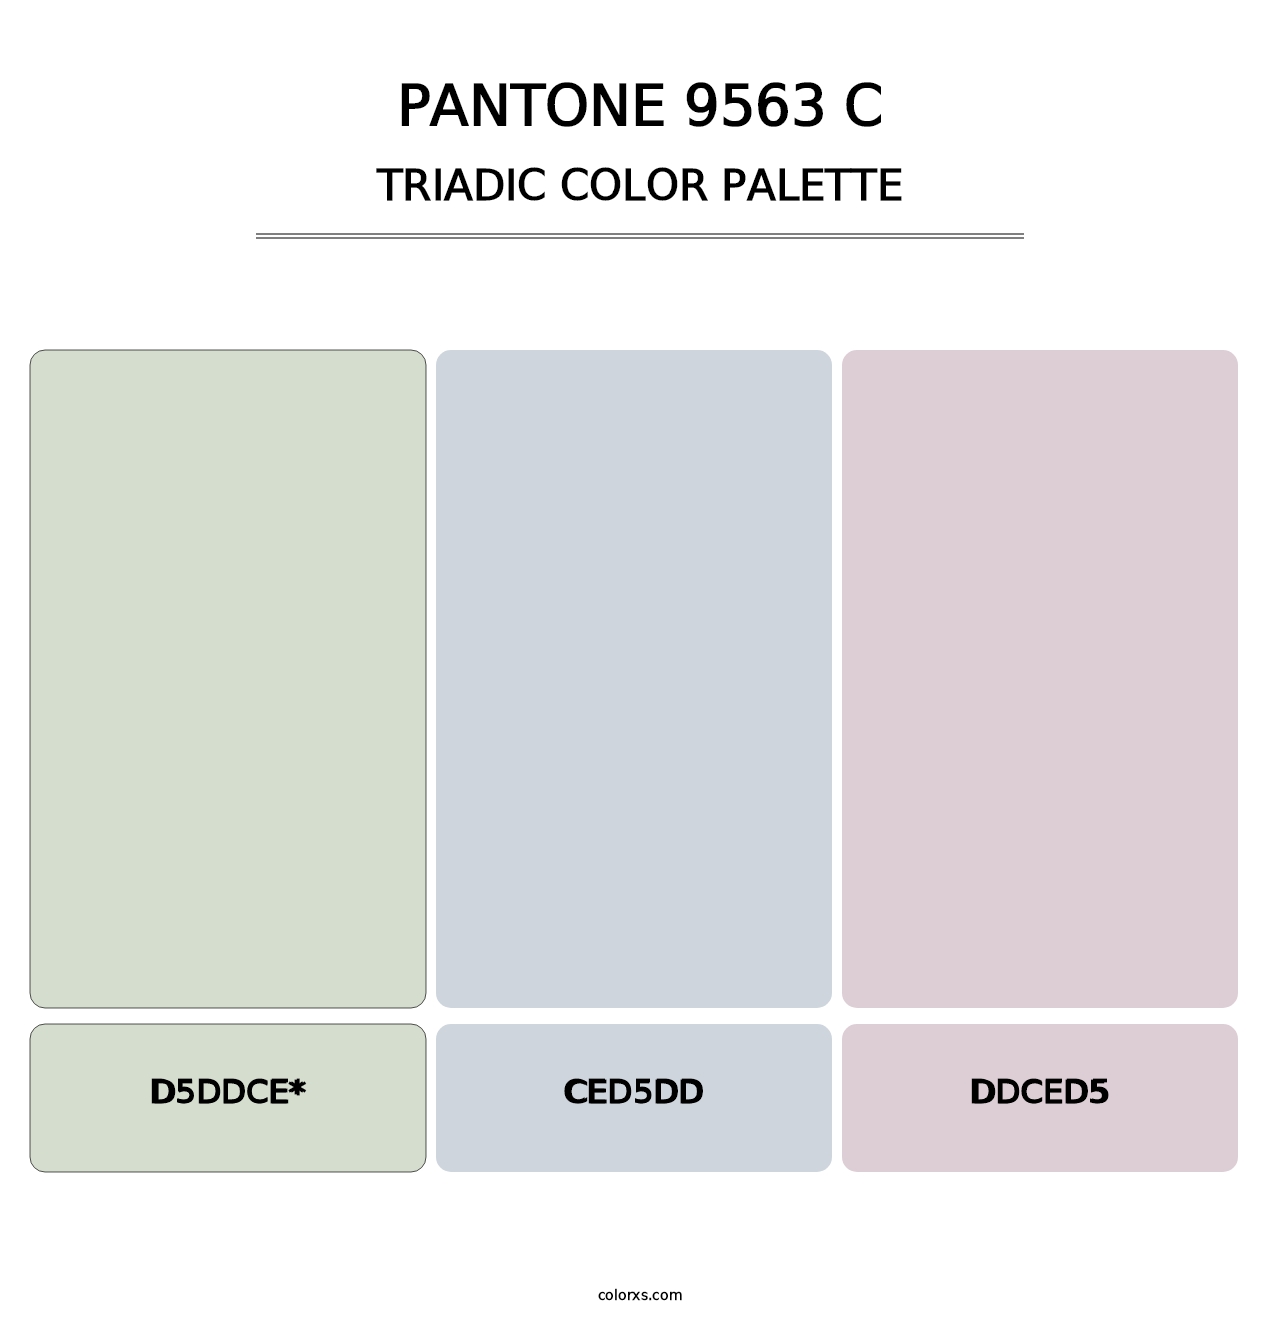 PANTONE 9563 C - Triadic Color Palette